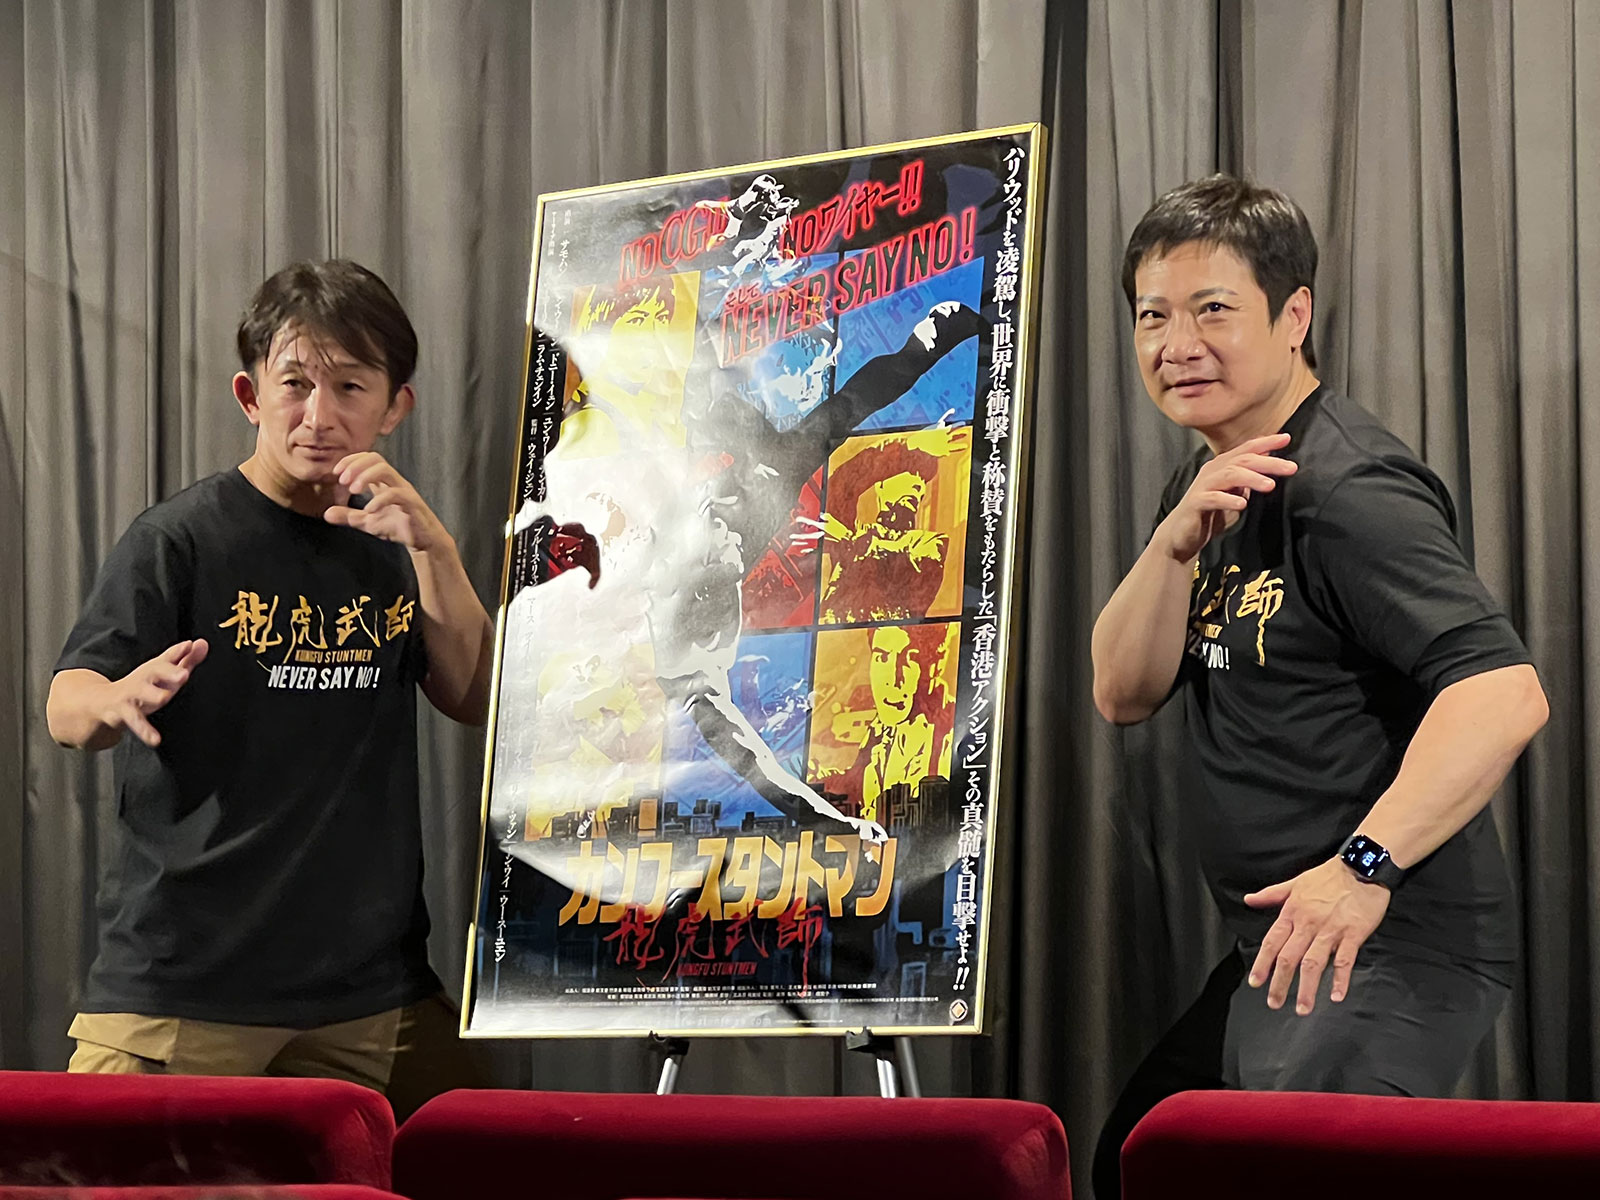 新宿武蔵野館にて実施された初日舞台挨拶のフォトセッションにて撮影。左は谷垣健治氏、右はチン・カーロッ氏。